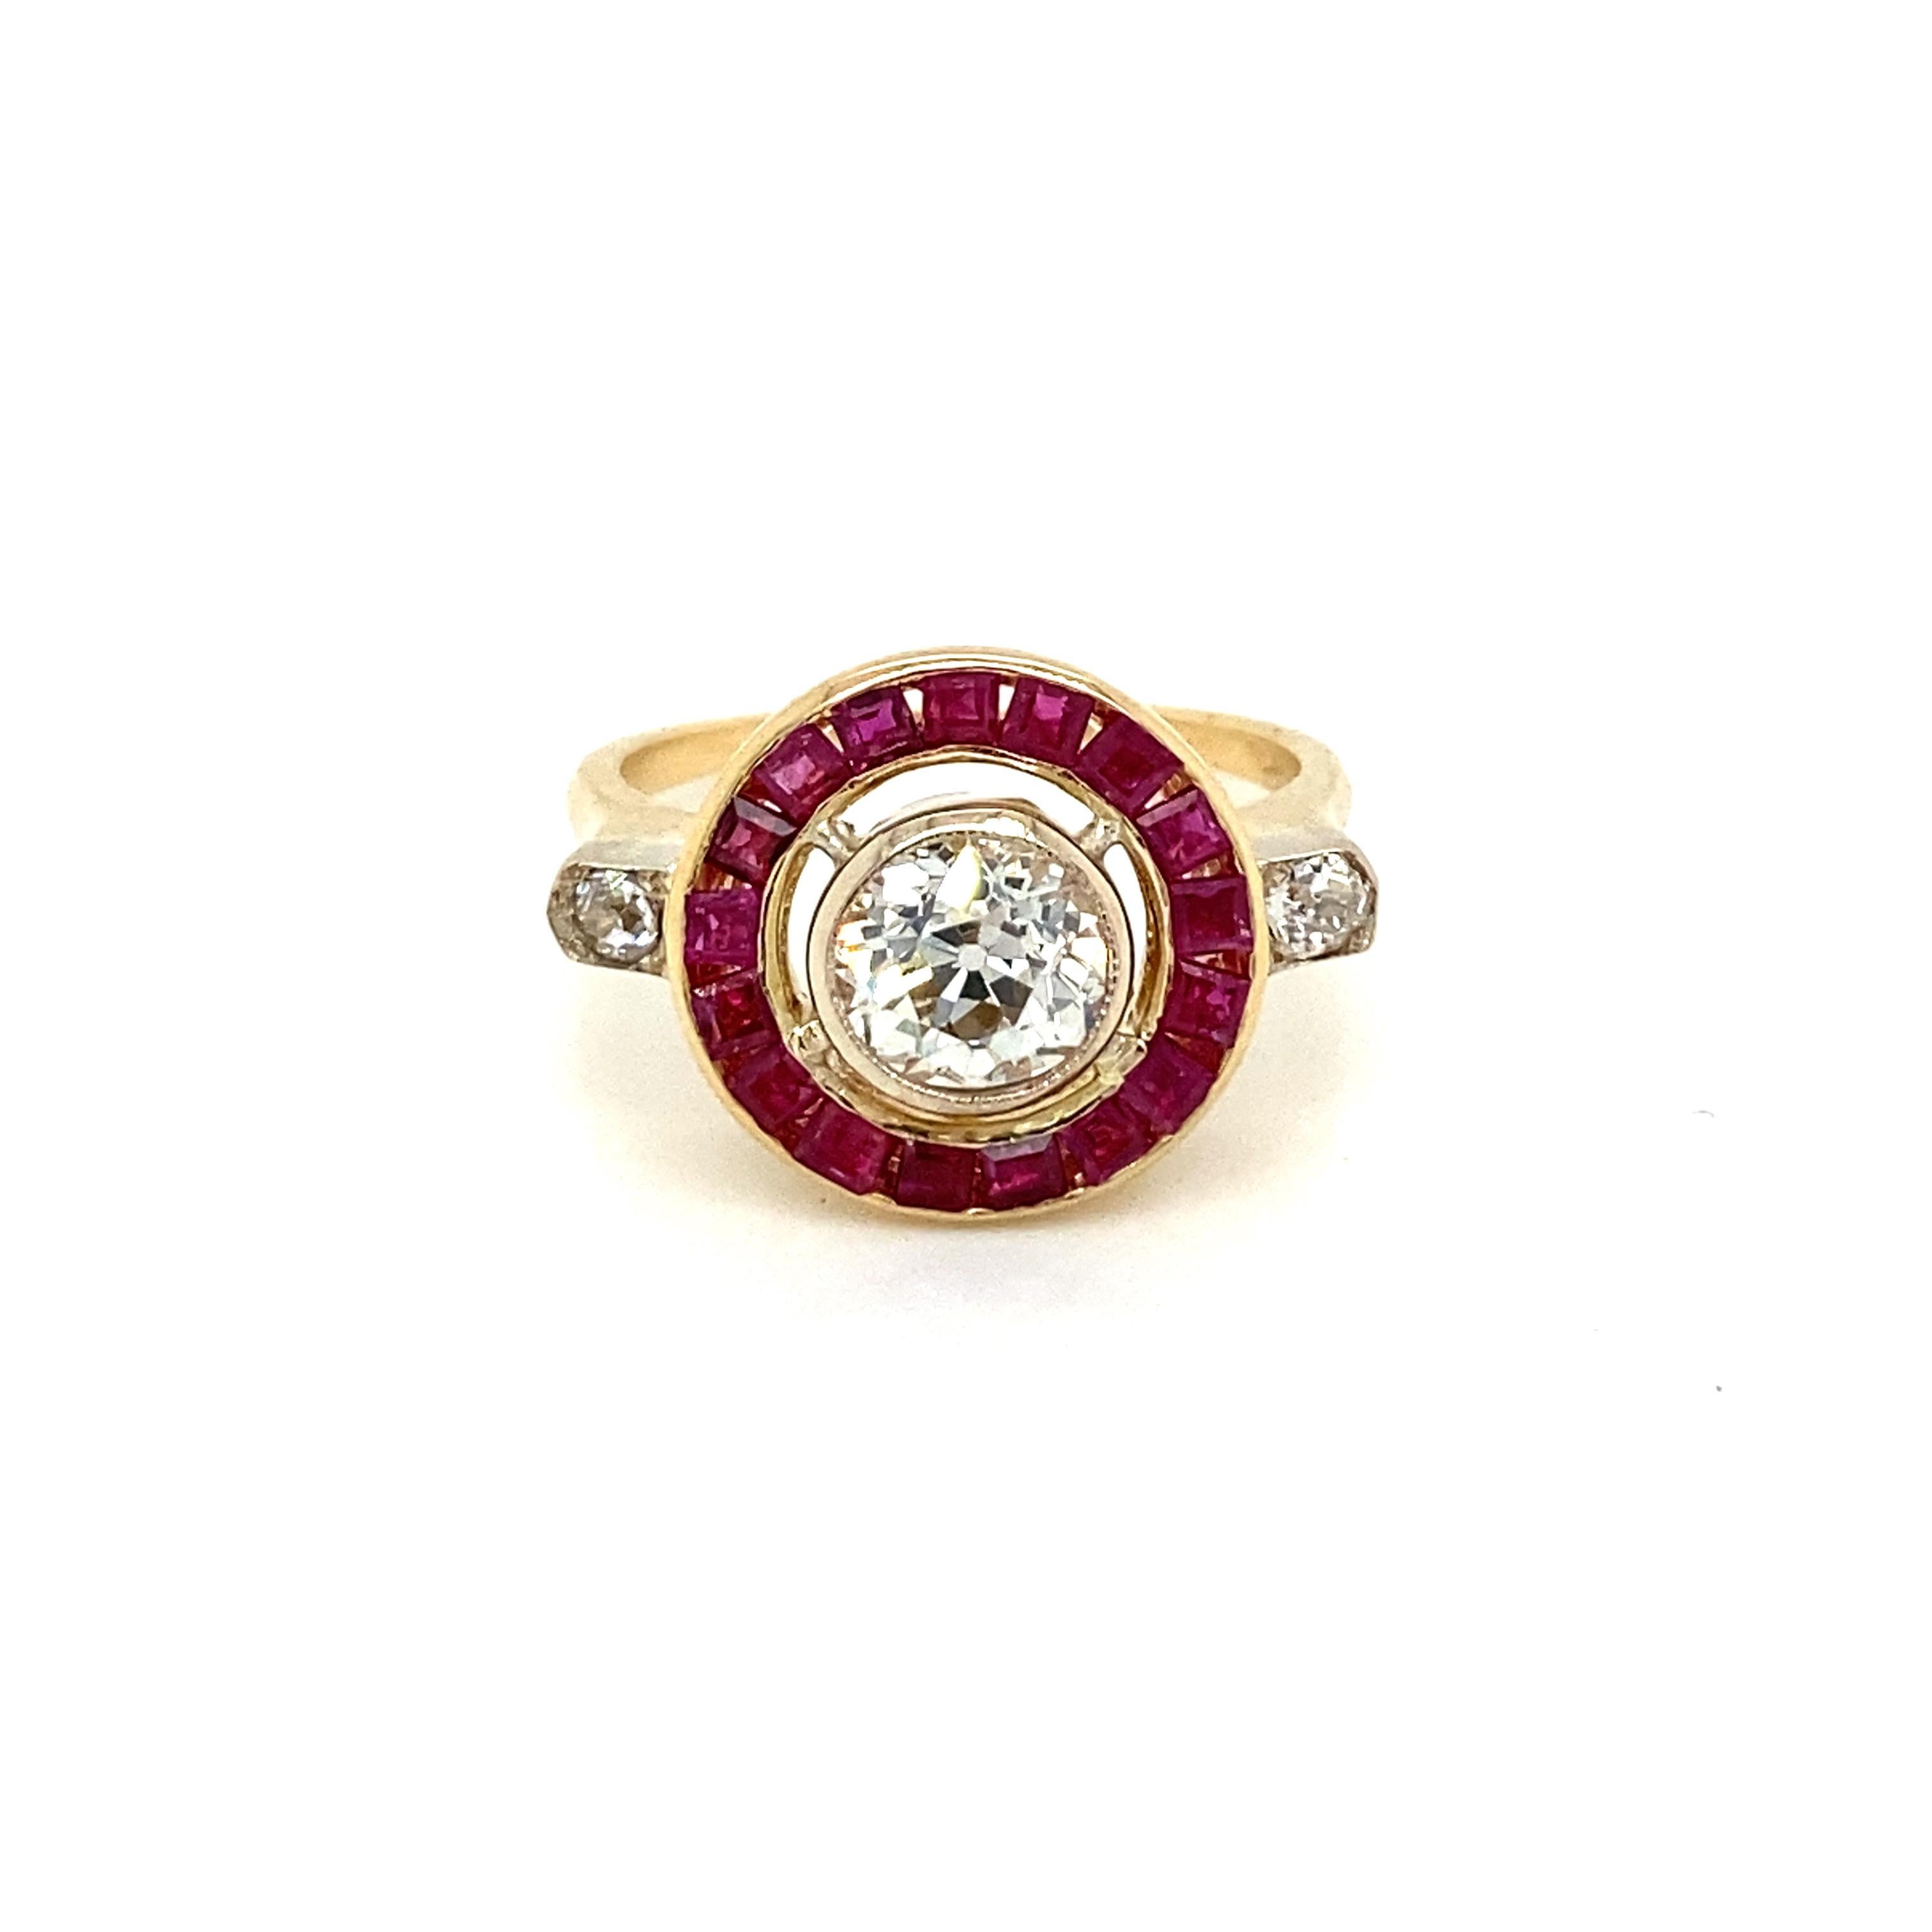 Hübsch und authentisch Art Deco Verlobungsring mit einem großen Old Mine cut Diamond in der Mitte, Gewicht 1,12 Karat I Farbe Vs2, und Rubin benutzerdefinierte geschnitten. Dieser wunderschöne Ring aus 18-karätigem Gold ist vollständig handgefertigt